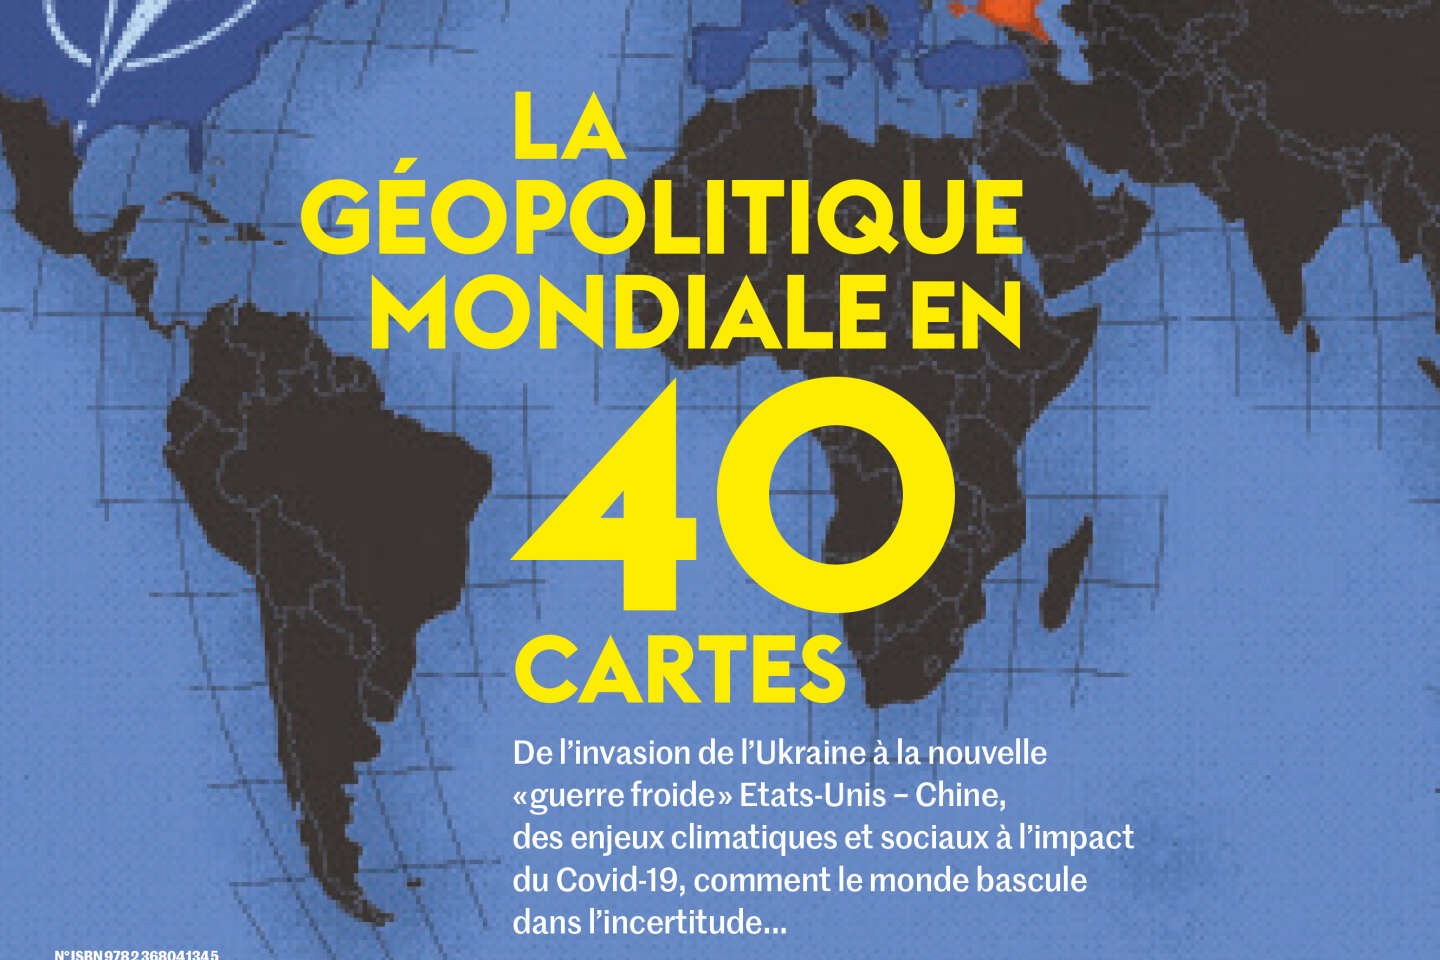 Un hors-série du « Monde » présente la nouvelle géopolitique en quarante  cartes